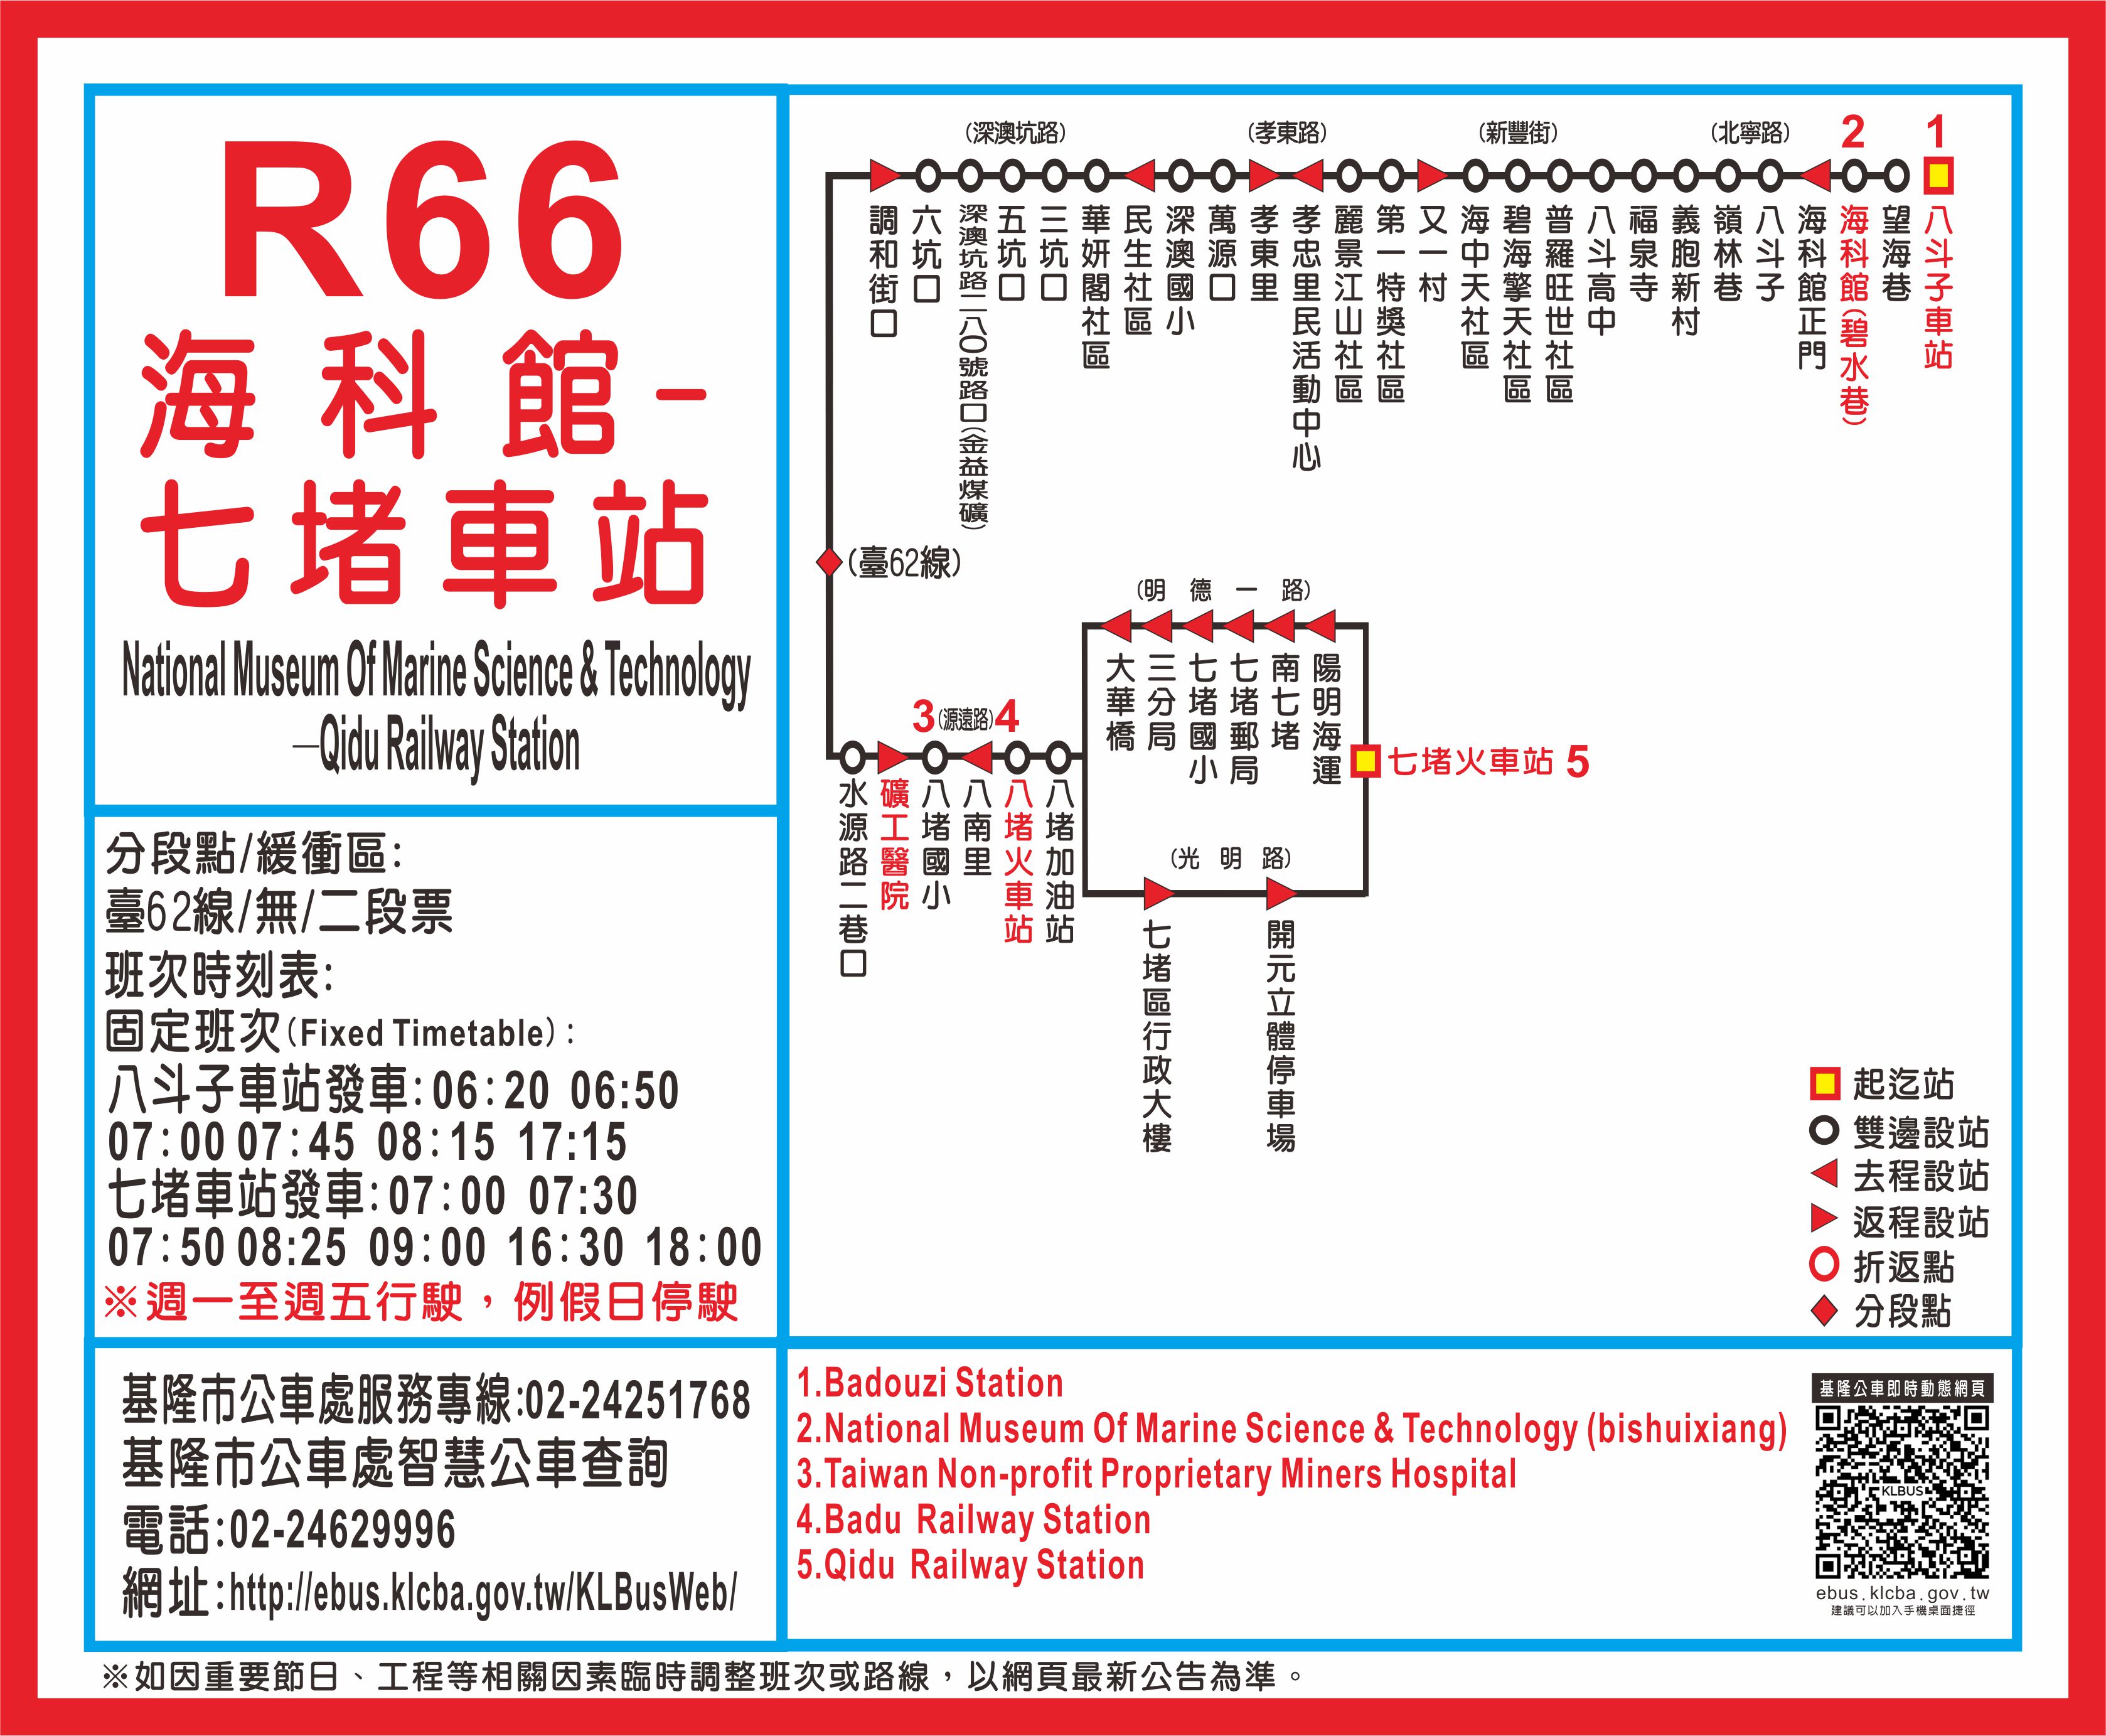 R66海科館 - 七堵車站路線圖